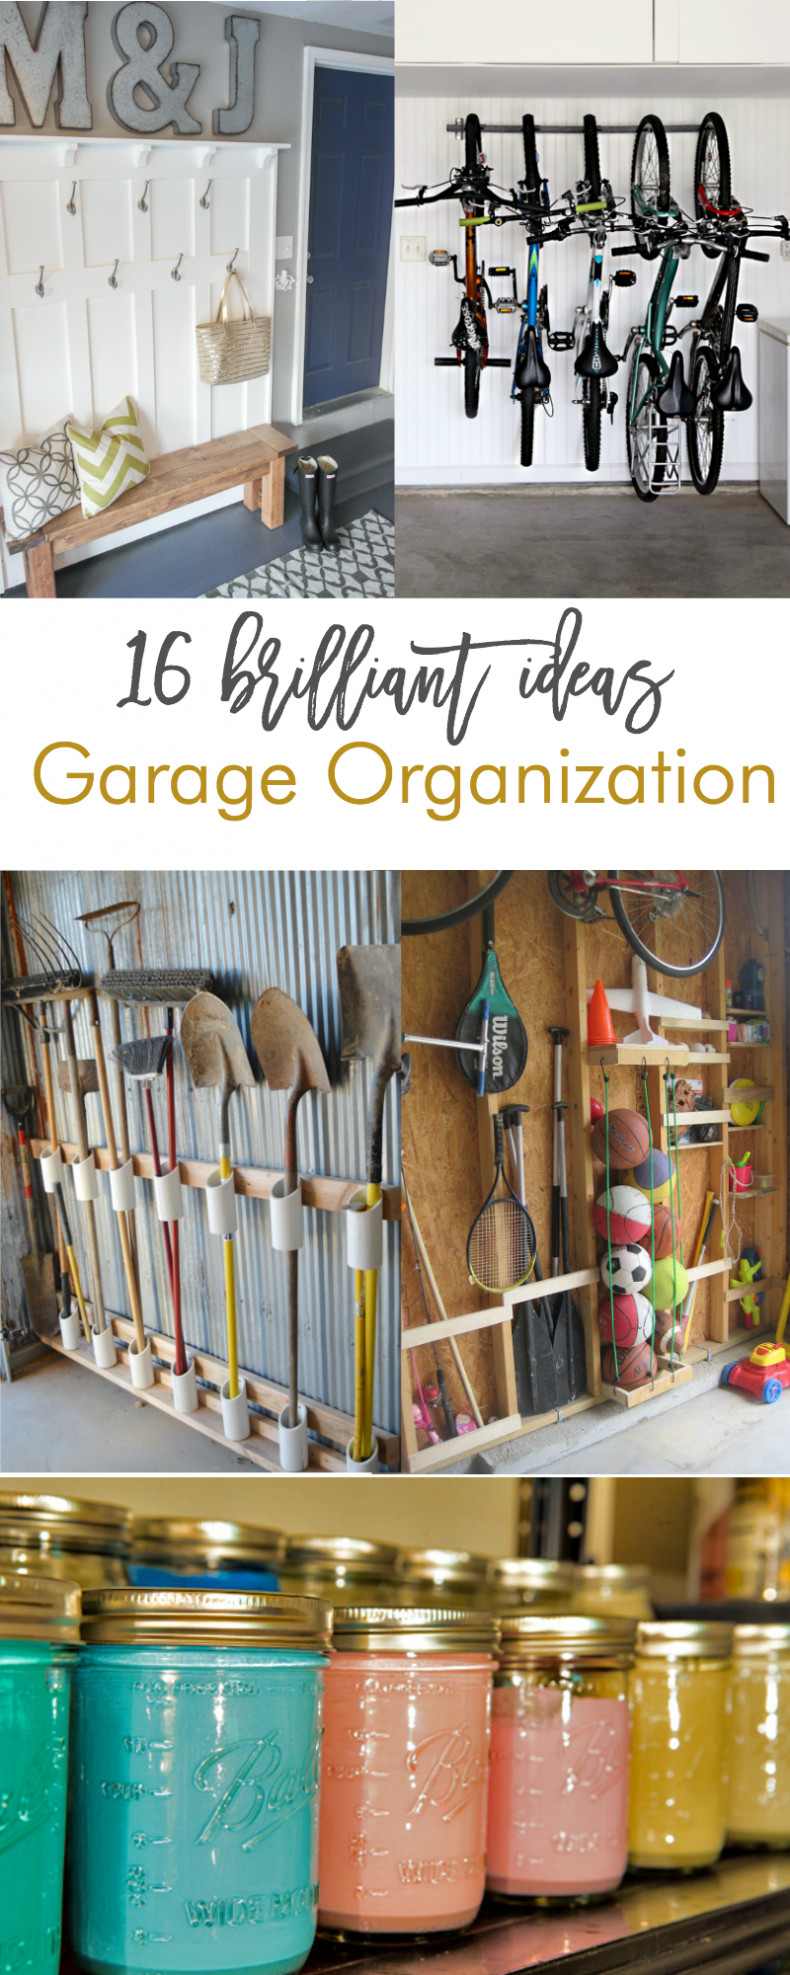 DIY Garage Organizer
 16 Brilliant DIY Garage Organization Ideas